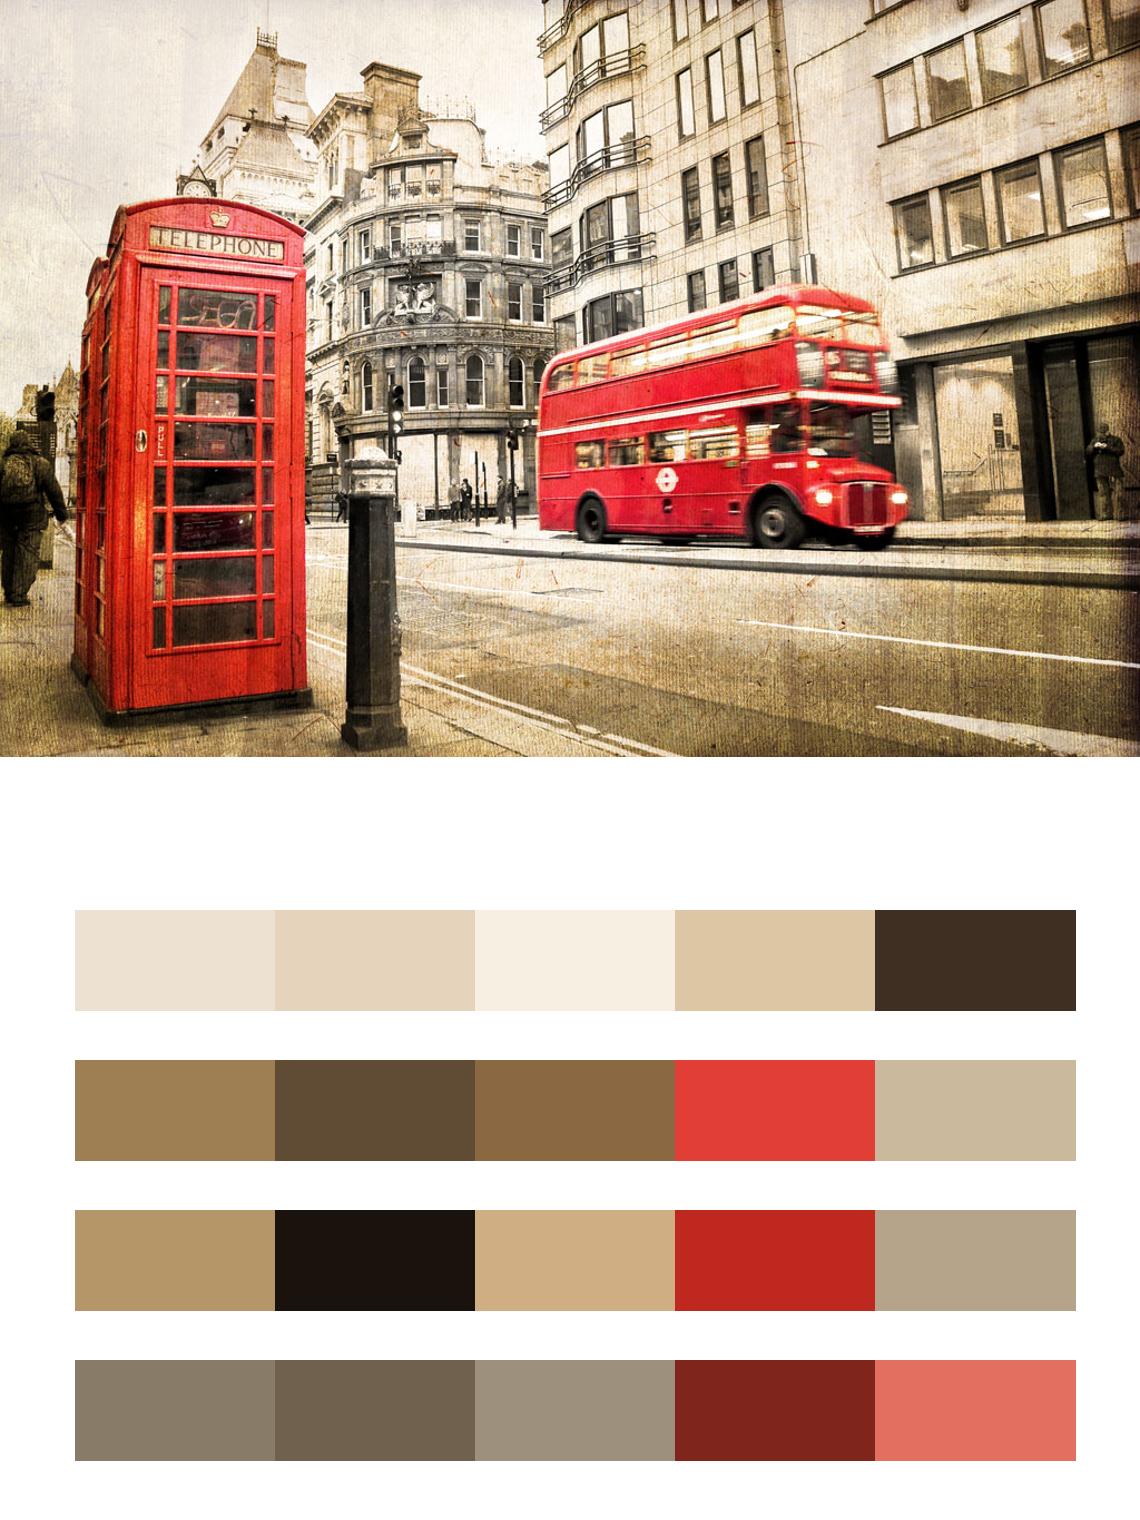 Телефонная будка прекрасного Лондона цвета